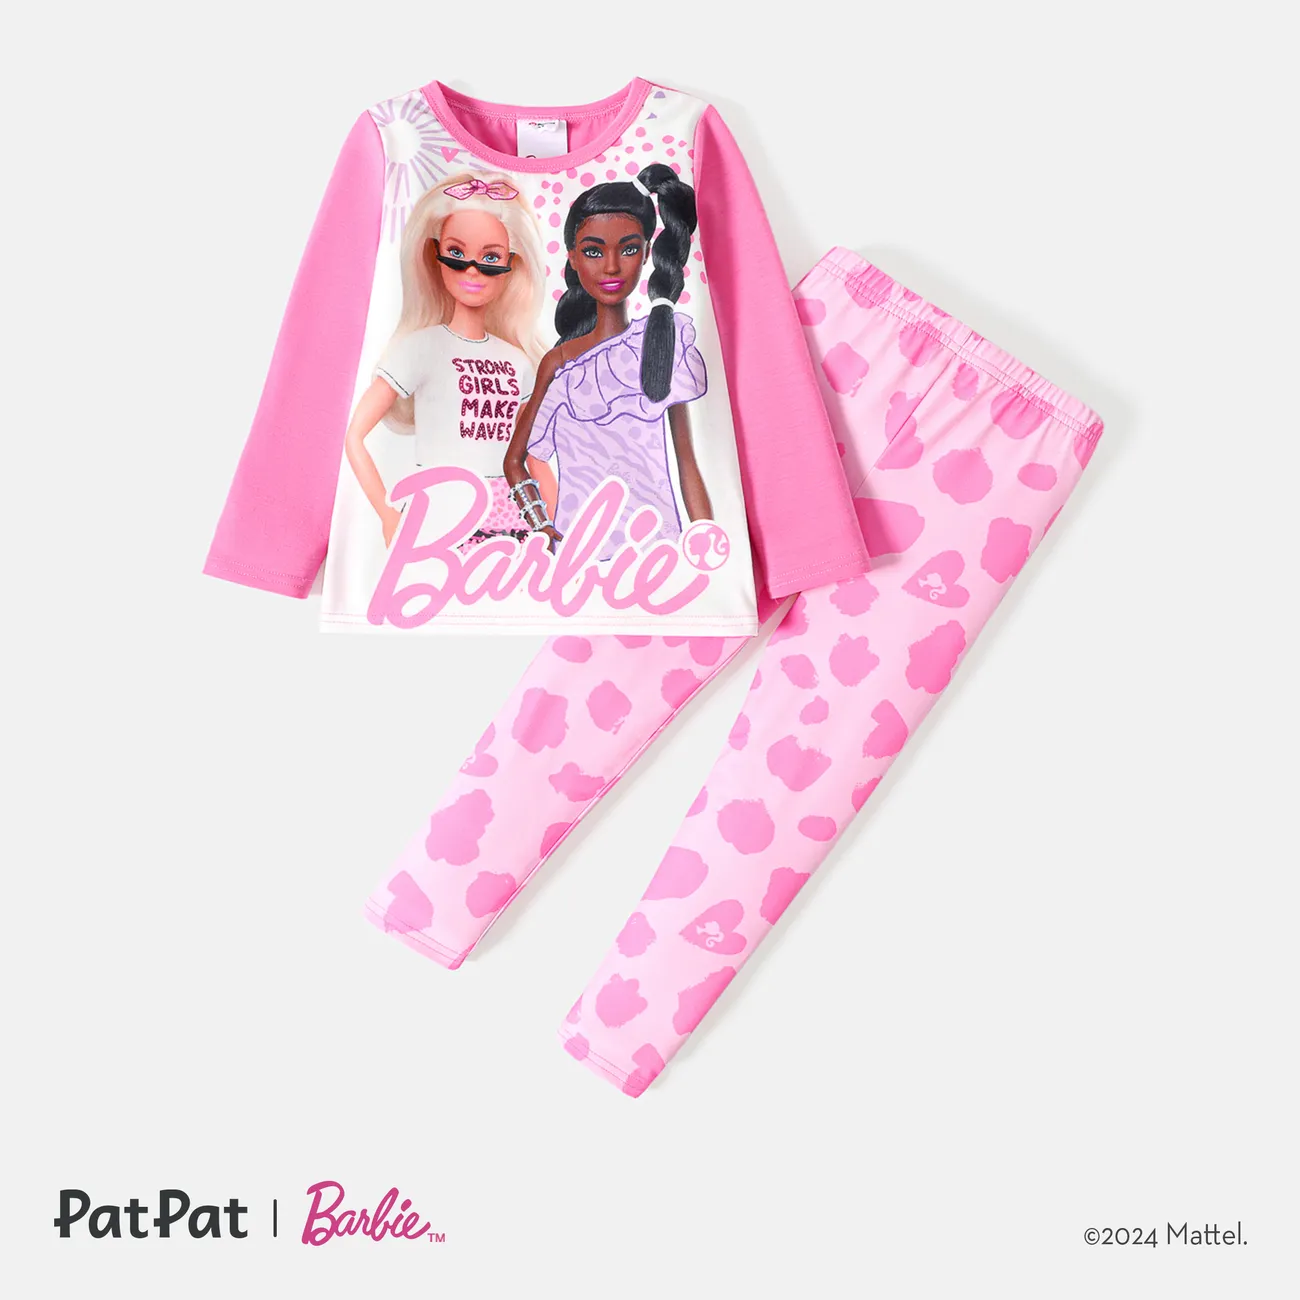 Barbie 2 unidades Criança Menina Bonito conjuntos de camisetas Rosa big image 1